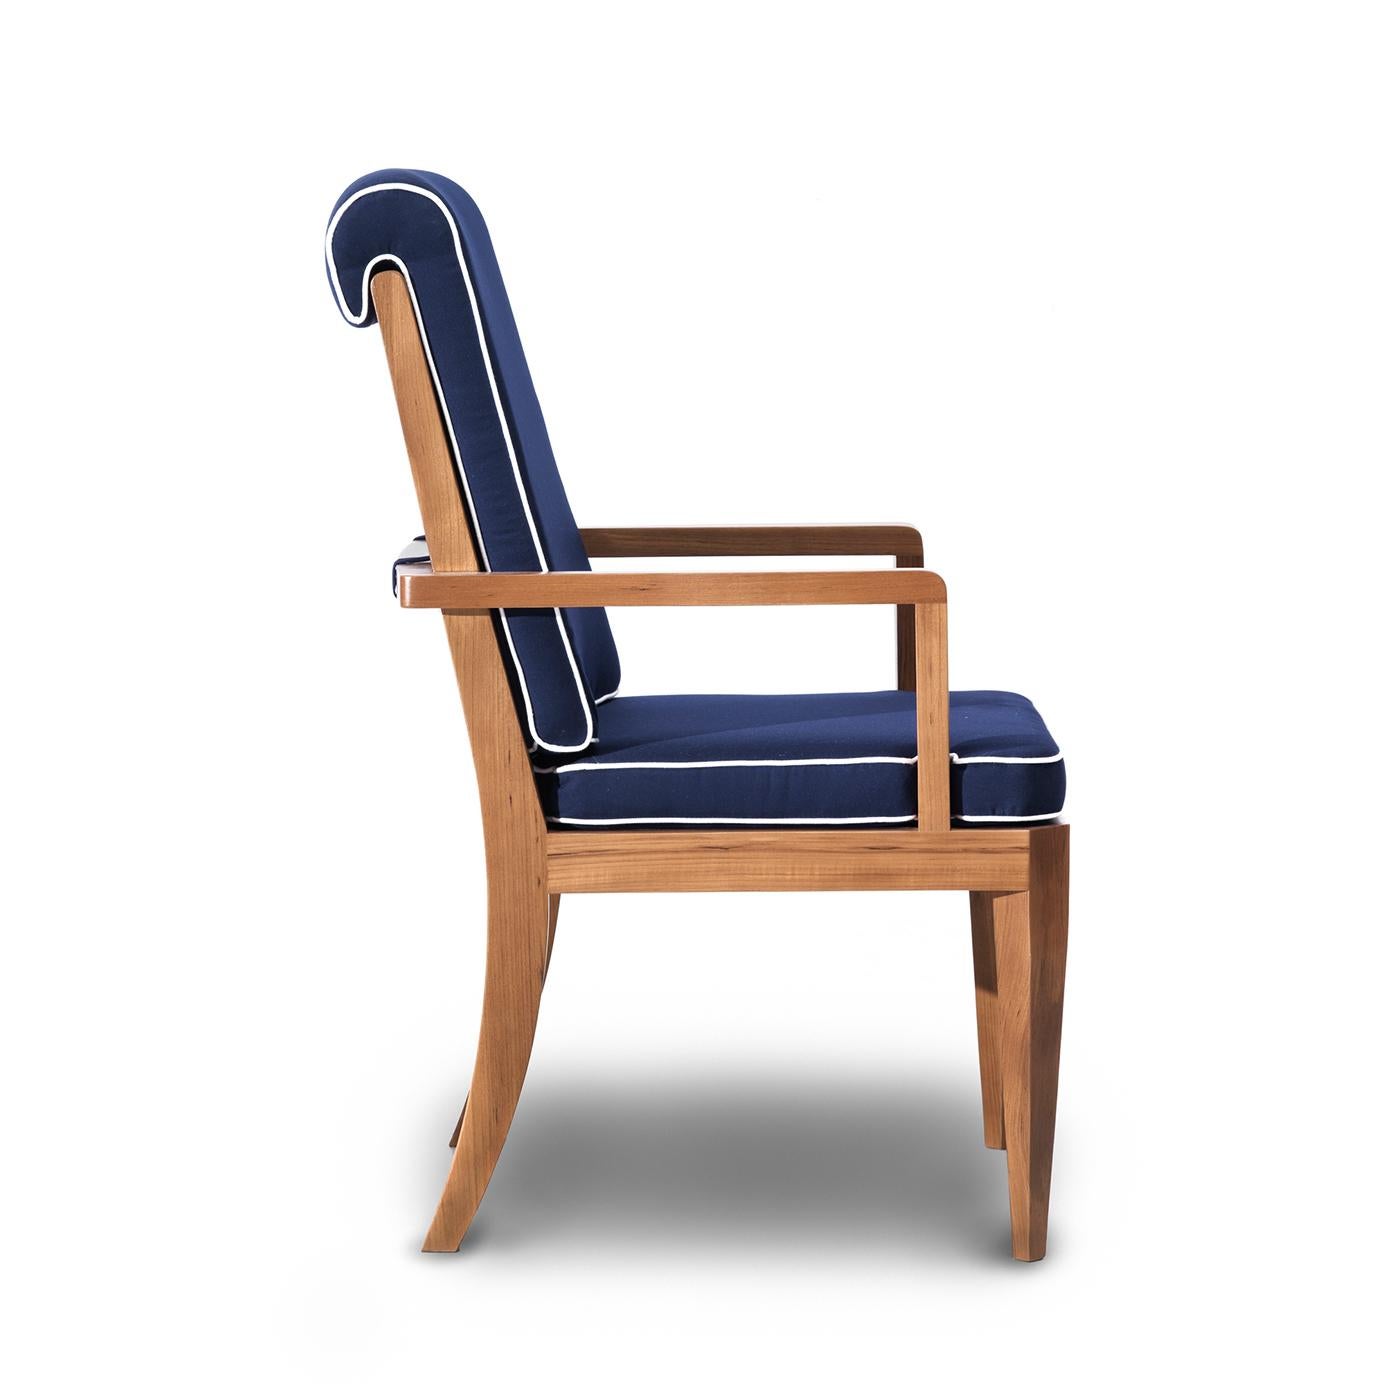 Ce fauteuil exclusif allie la durabilité à l'esthétique moderne la plus raffinée, avec une base en teck massif dans un ton chaud. La structure robuste comprend un dossier légèrement incliné composé d'éléments verticaux enveloppés dans une barre